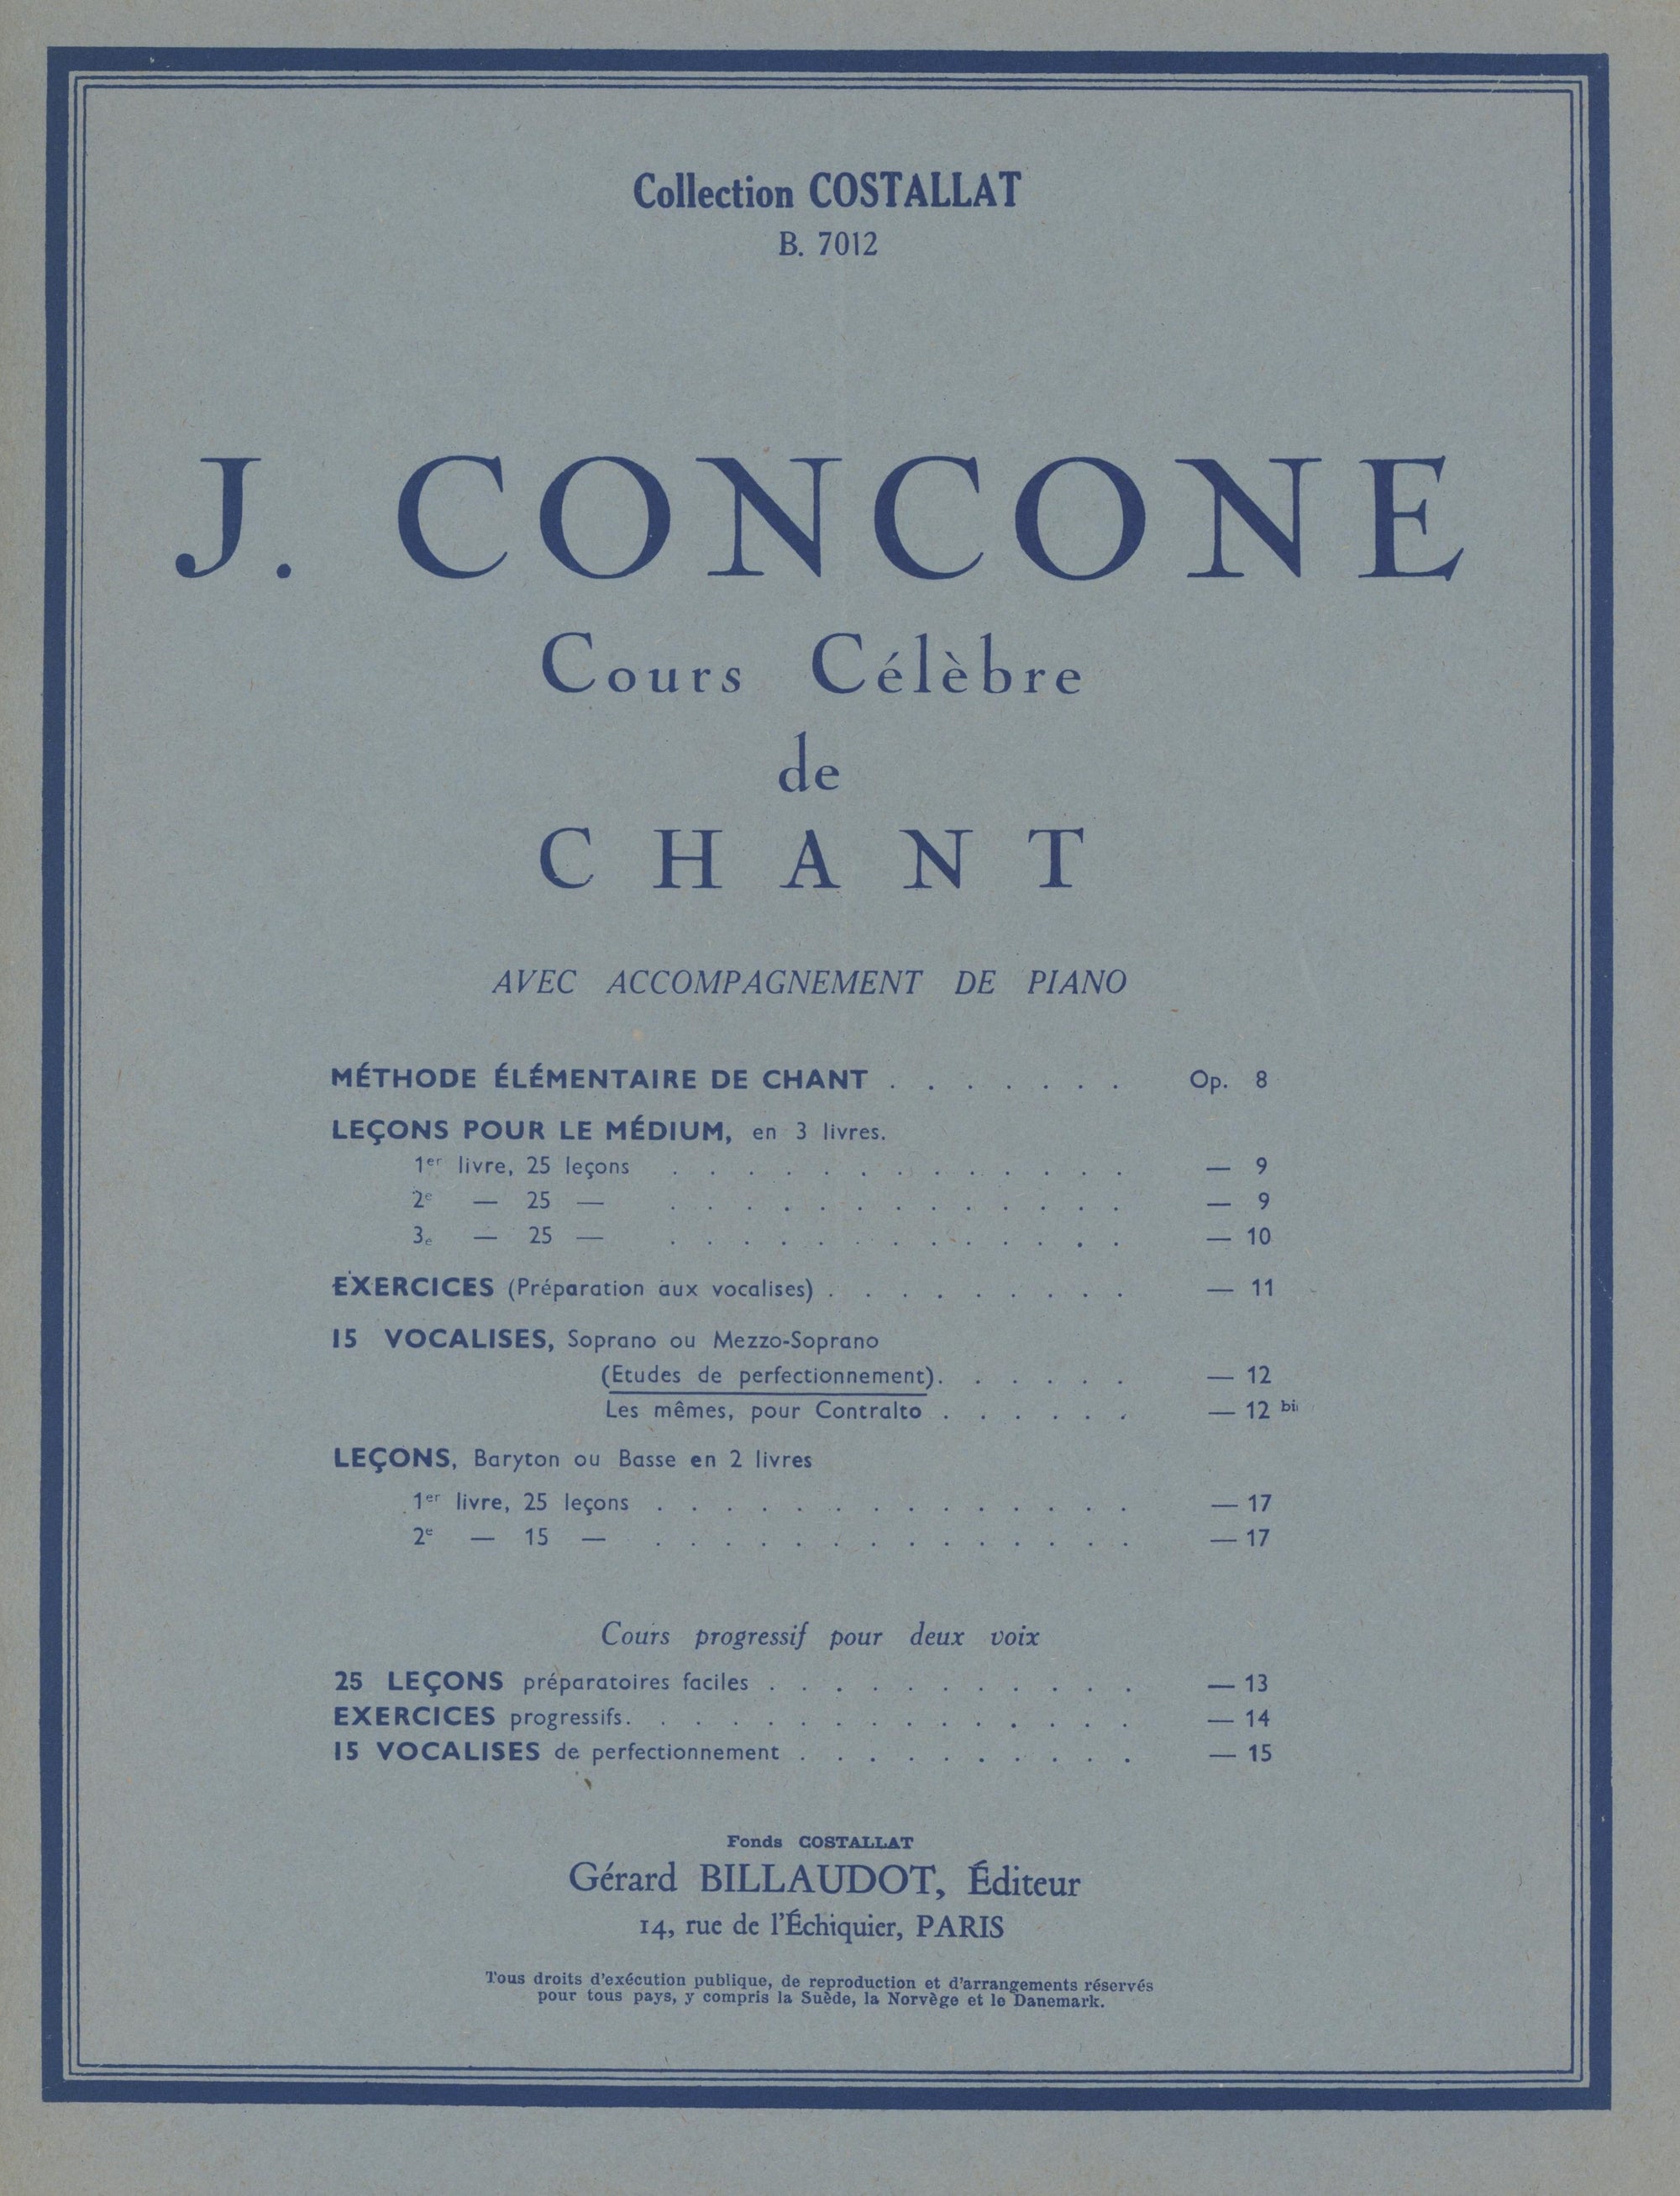 Concone: 15 vocalises (Études de perfectionnement), Op. 12